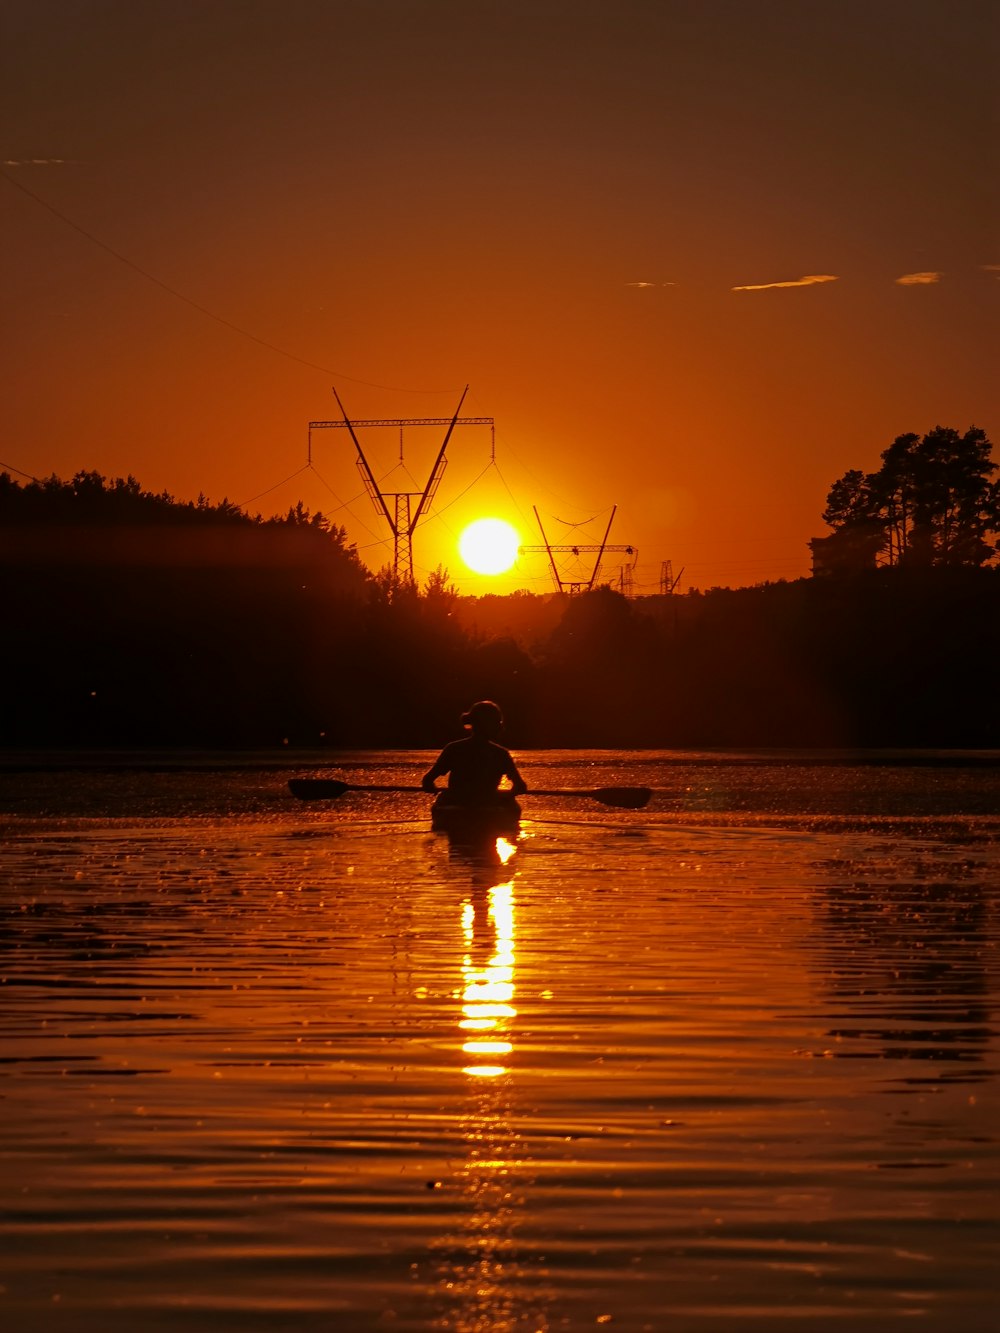 Silueta de la persona que monta a caballo en el agua durante la puesta del sol